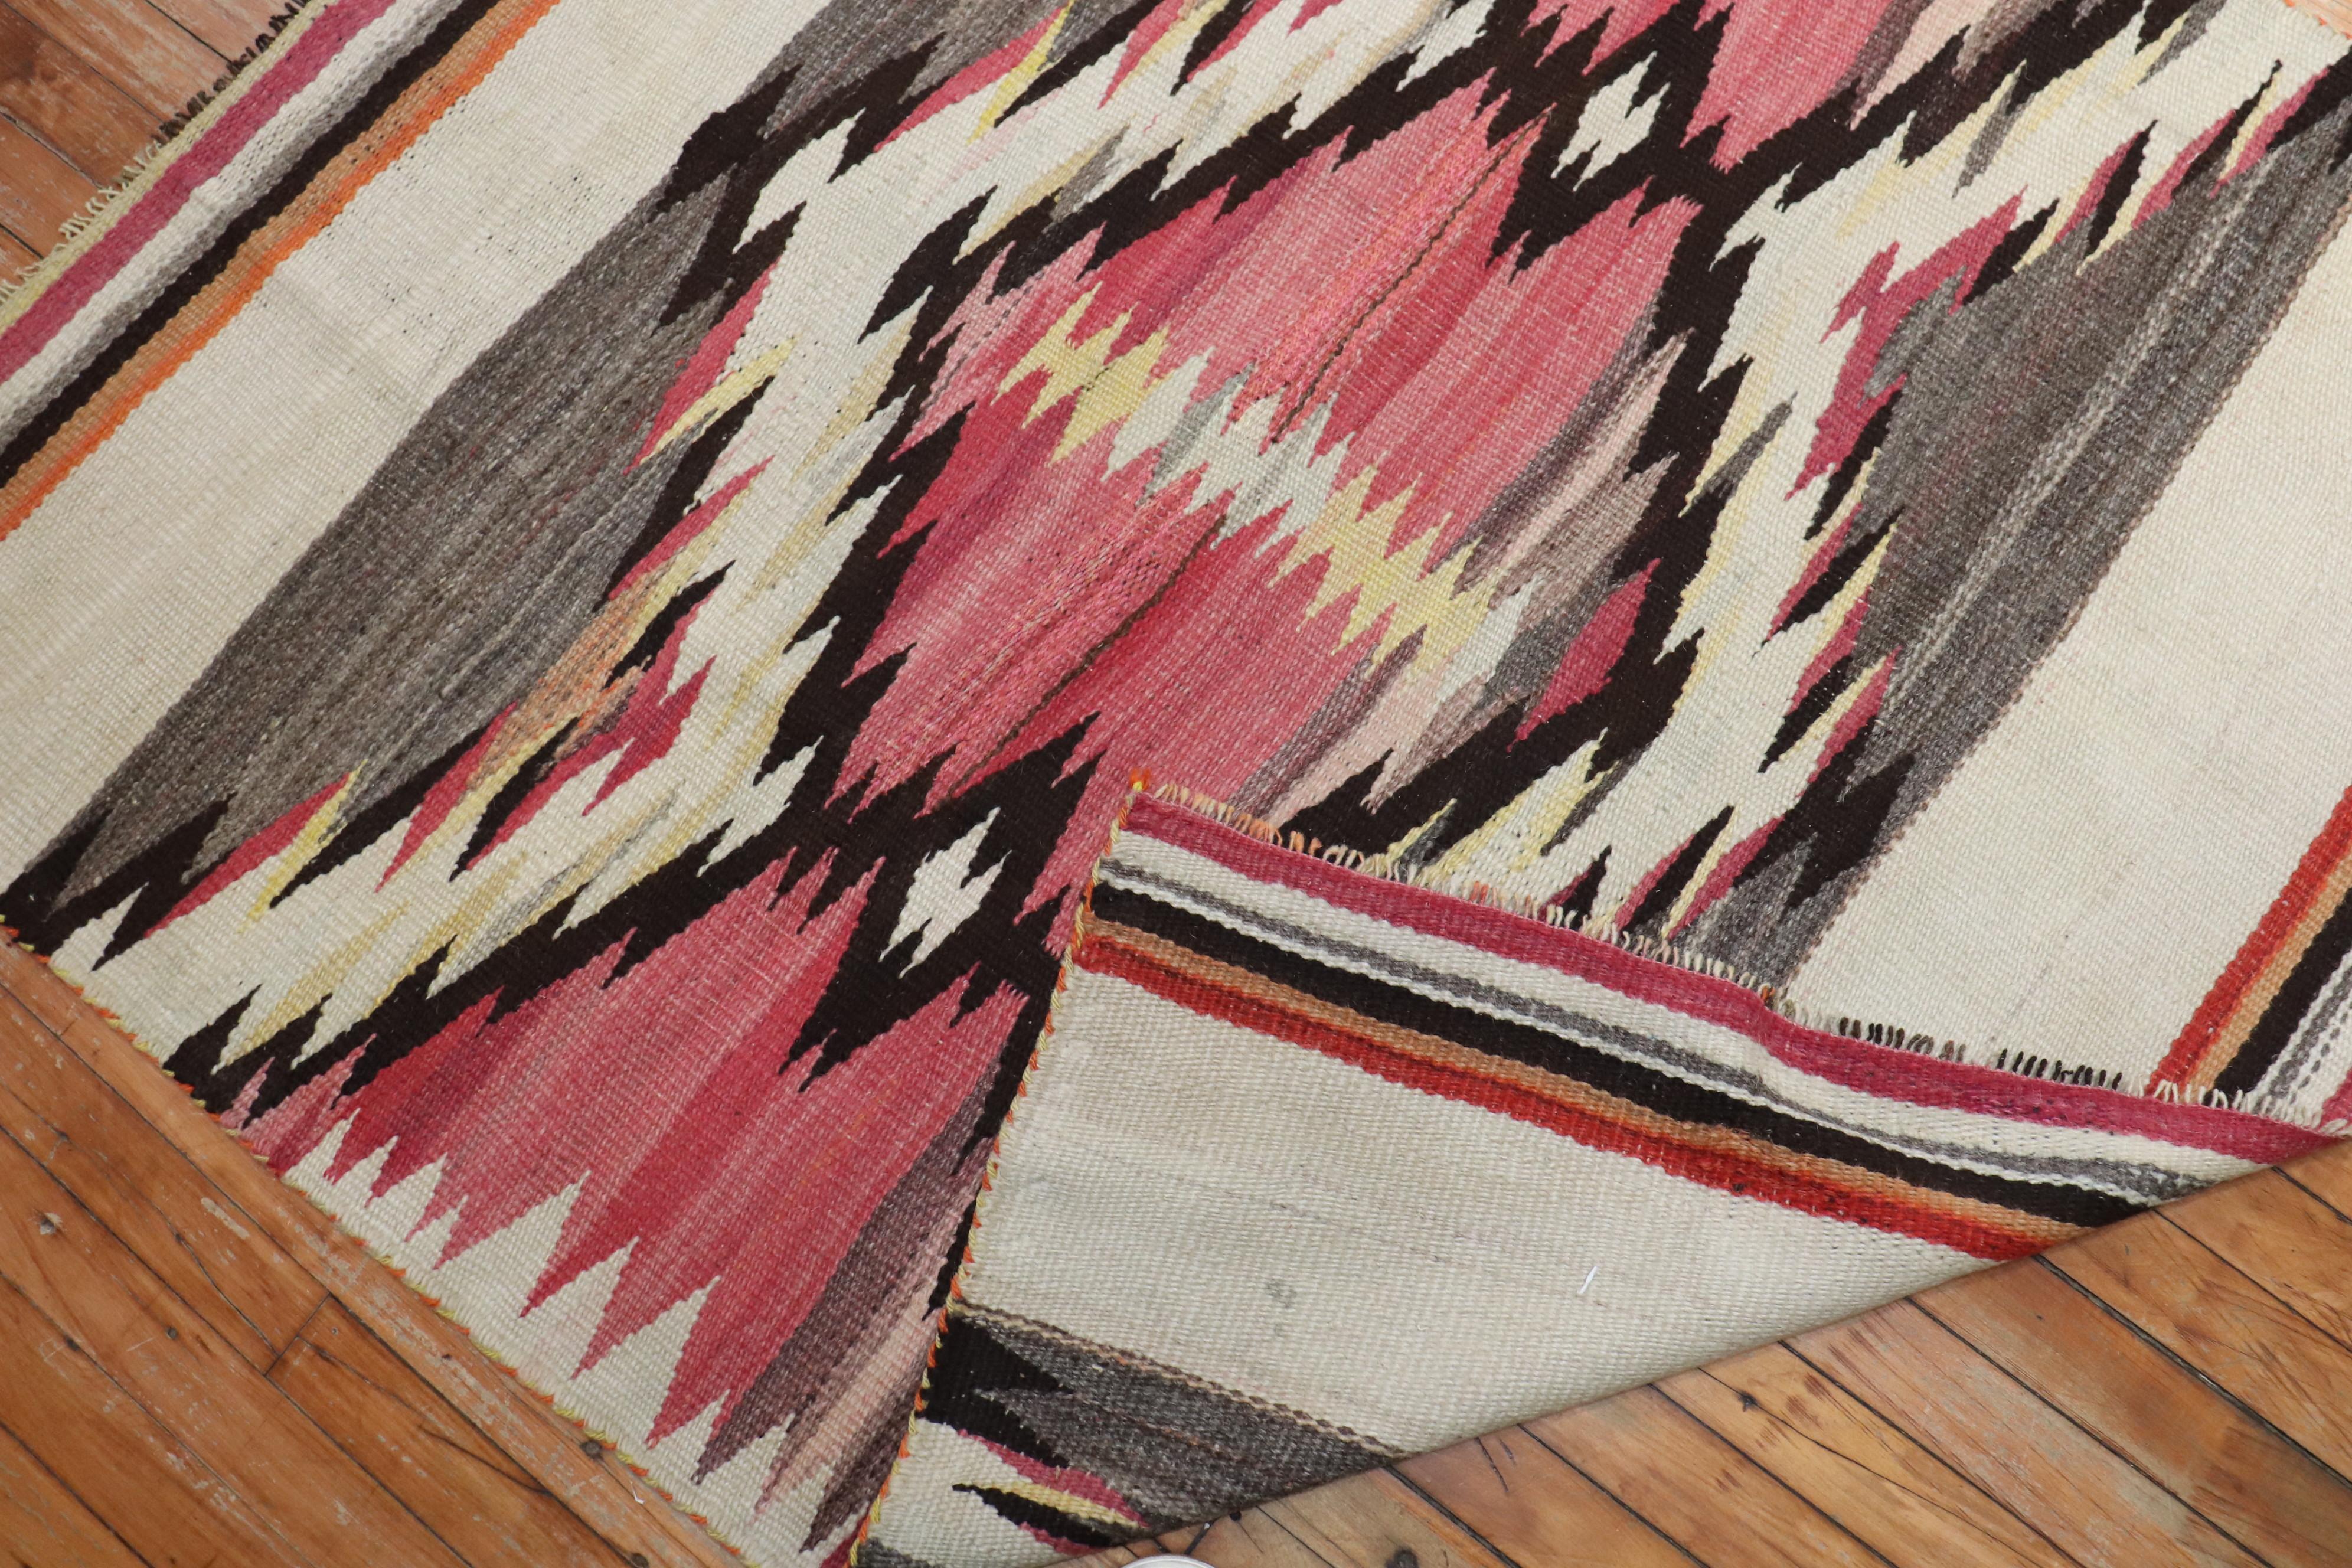 Tapis Navajo américain très décoratif du début du 20e siècle présentant un motif tribal en gris, rose, ivoire et brun


Mesures : 4'2